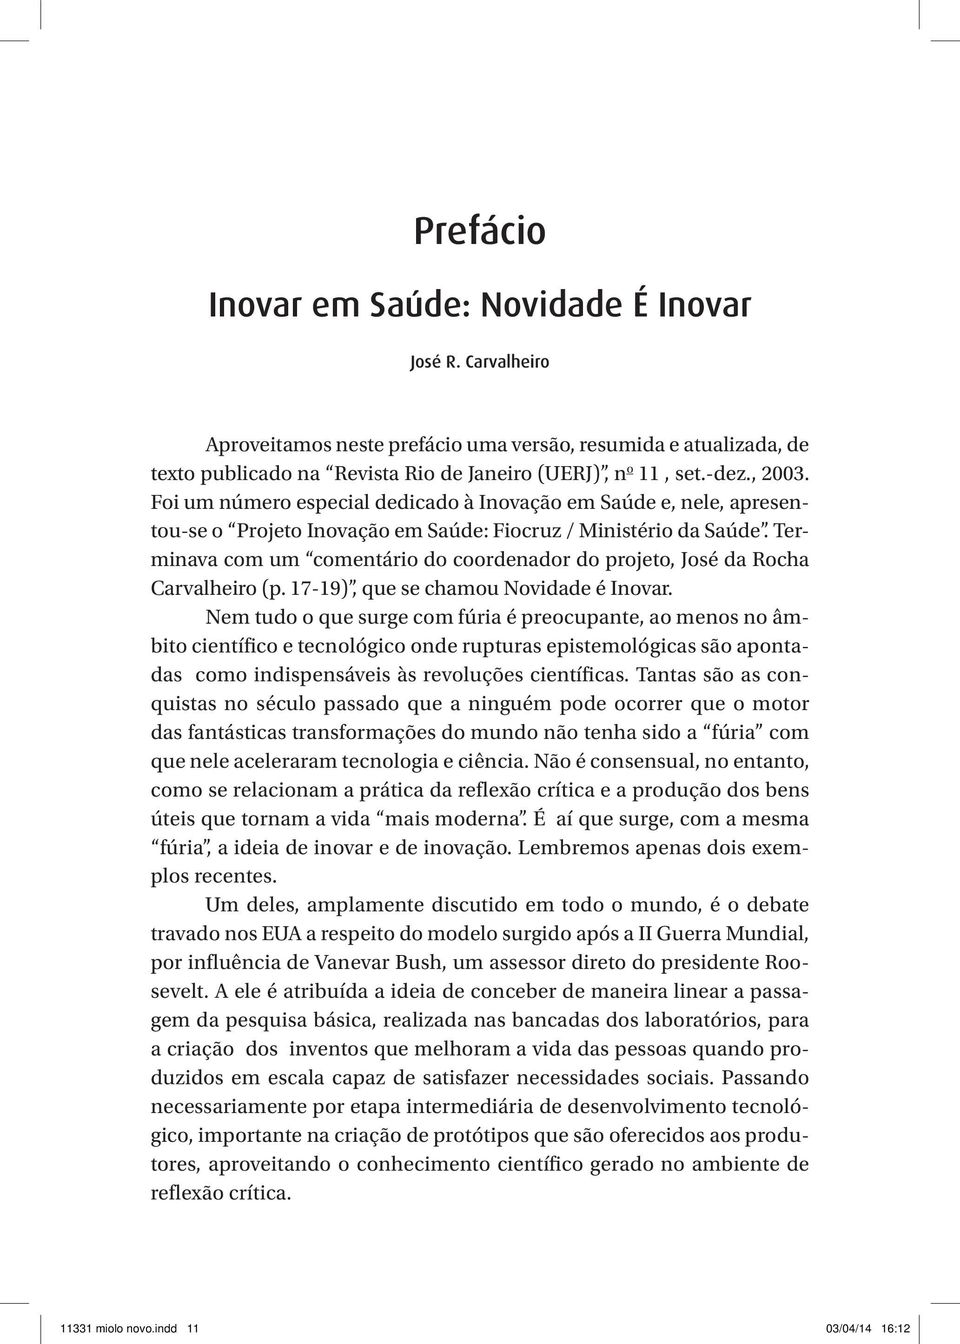 Terminava com um comentário do coordenador do projeto, José da Rocha Carvalheiro (p. 17-19), que se chamou Novidade é Inovar.